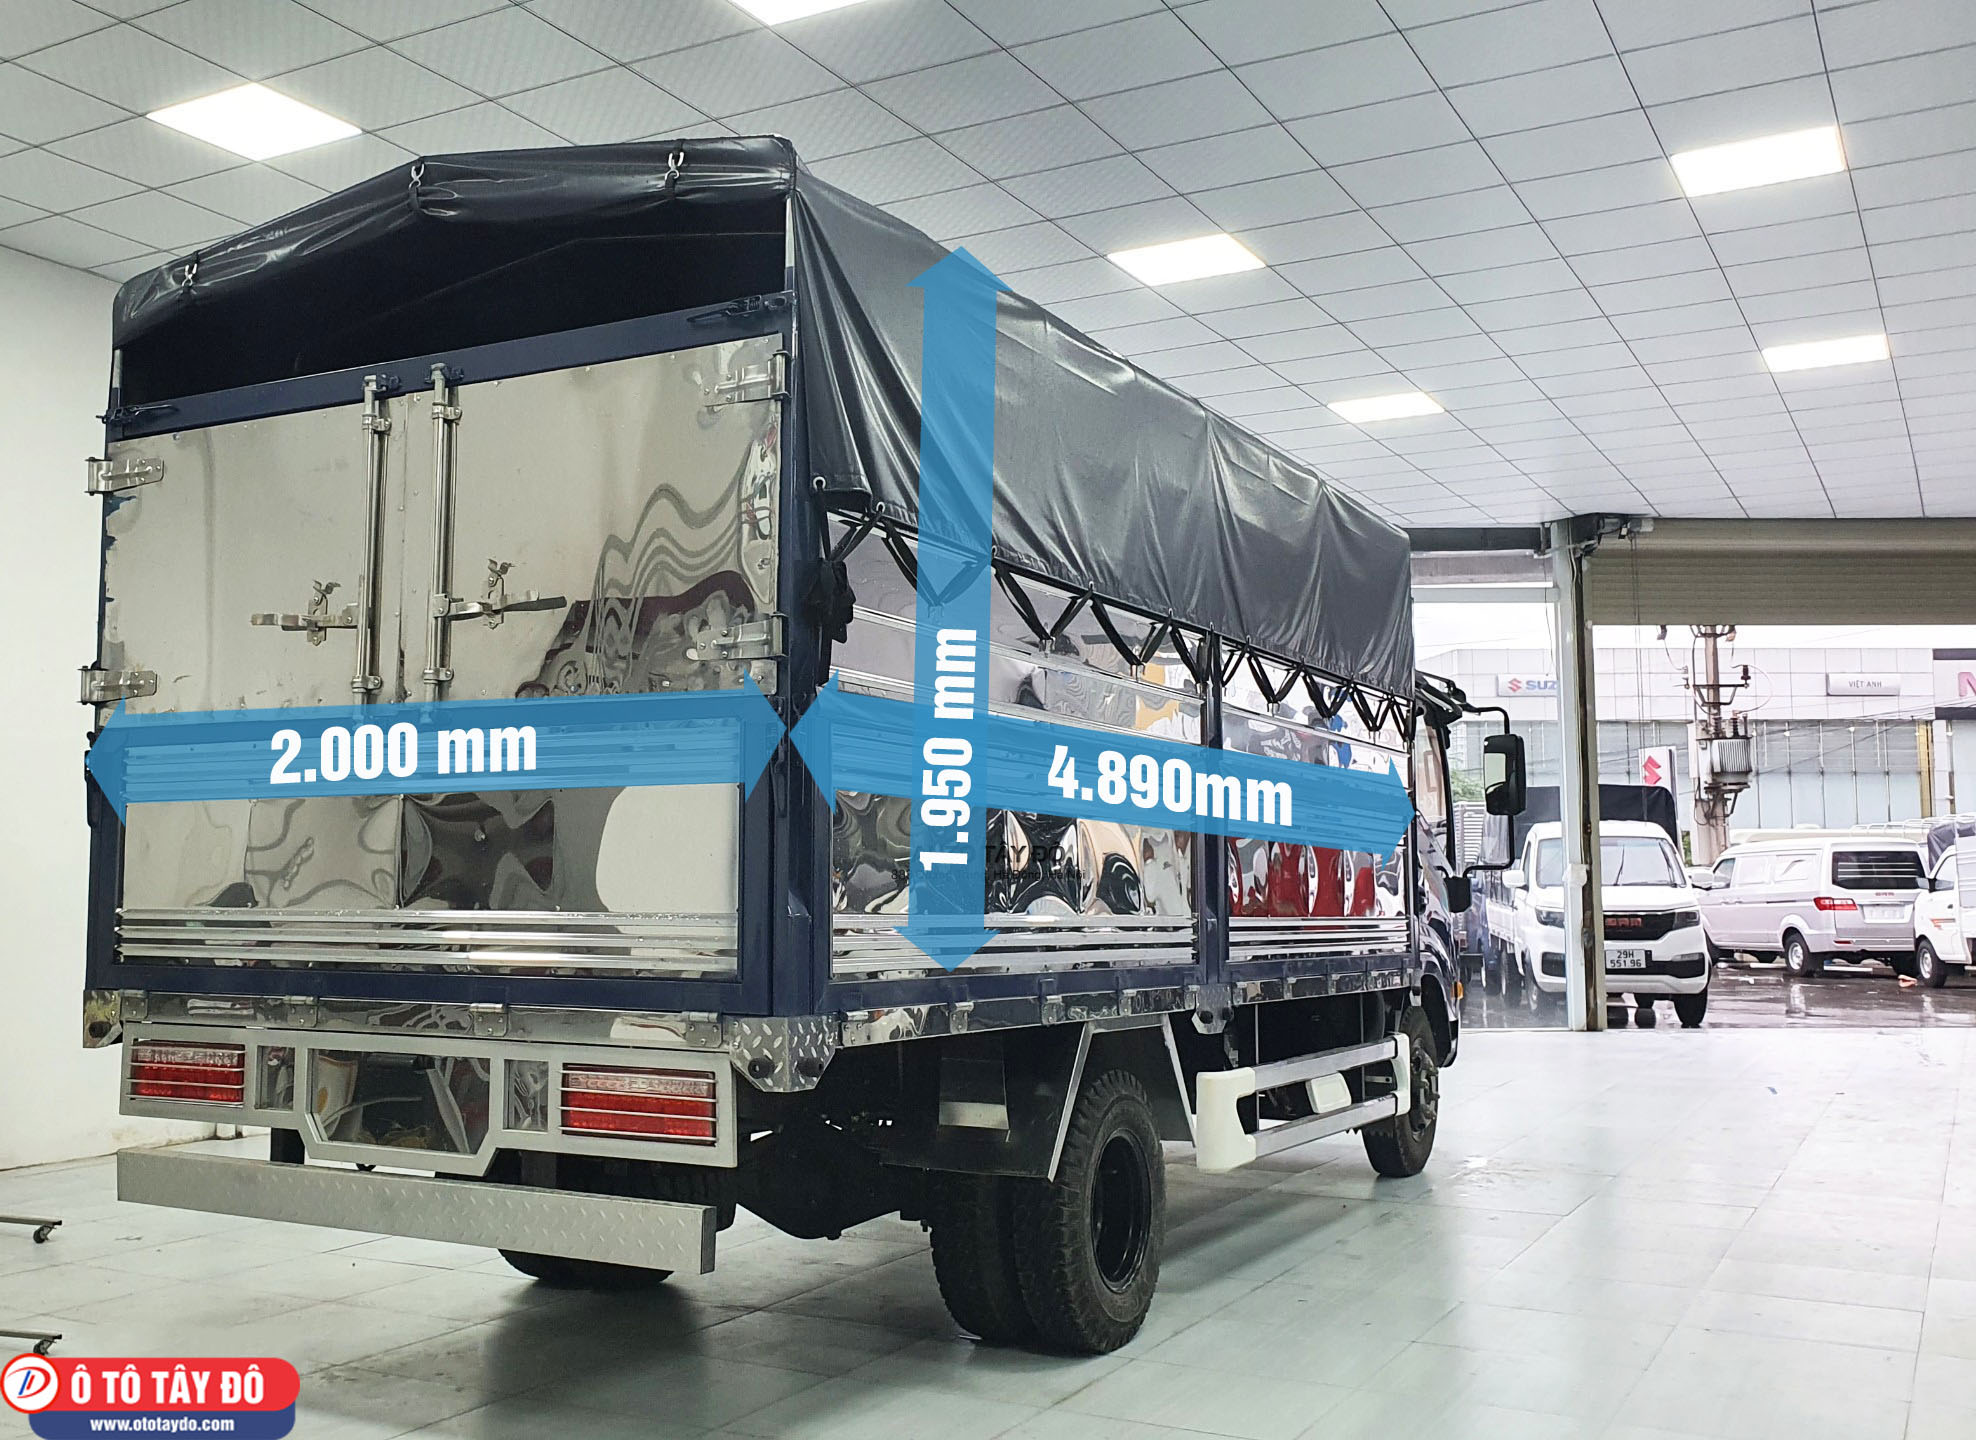 Kích thước thùng xe tải Tera 350 thùng bạt: 4.890 x 2.000 x 1.950 mm